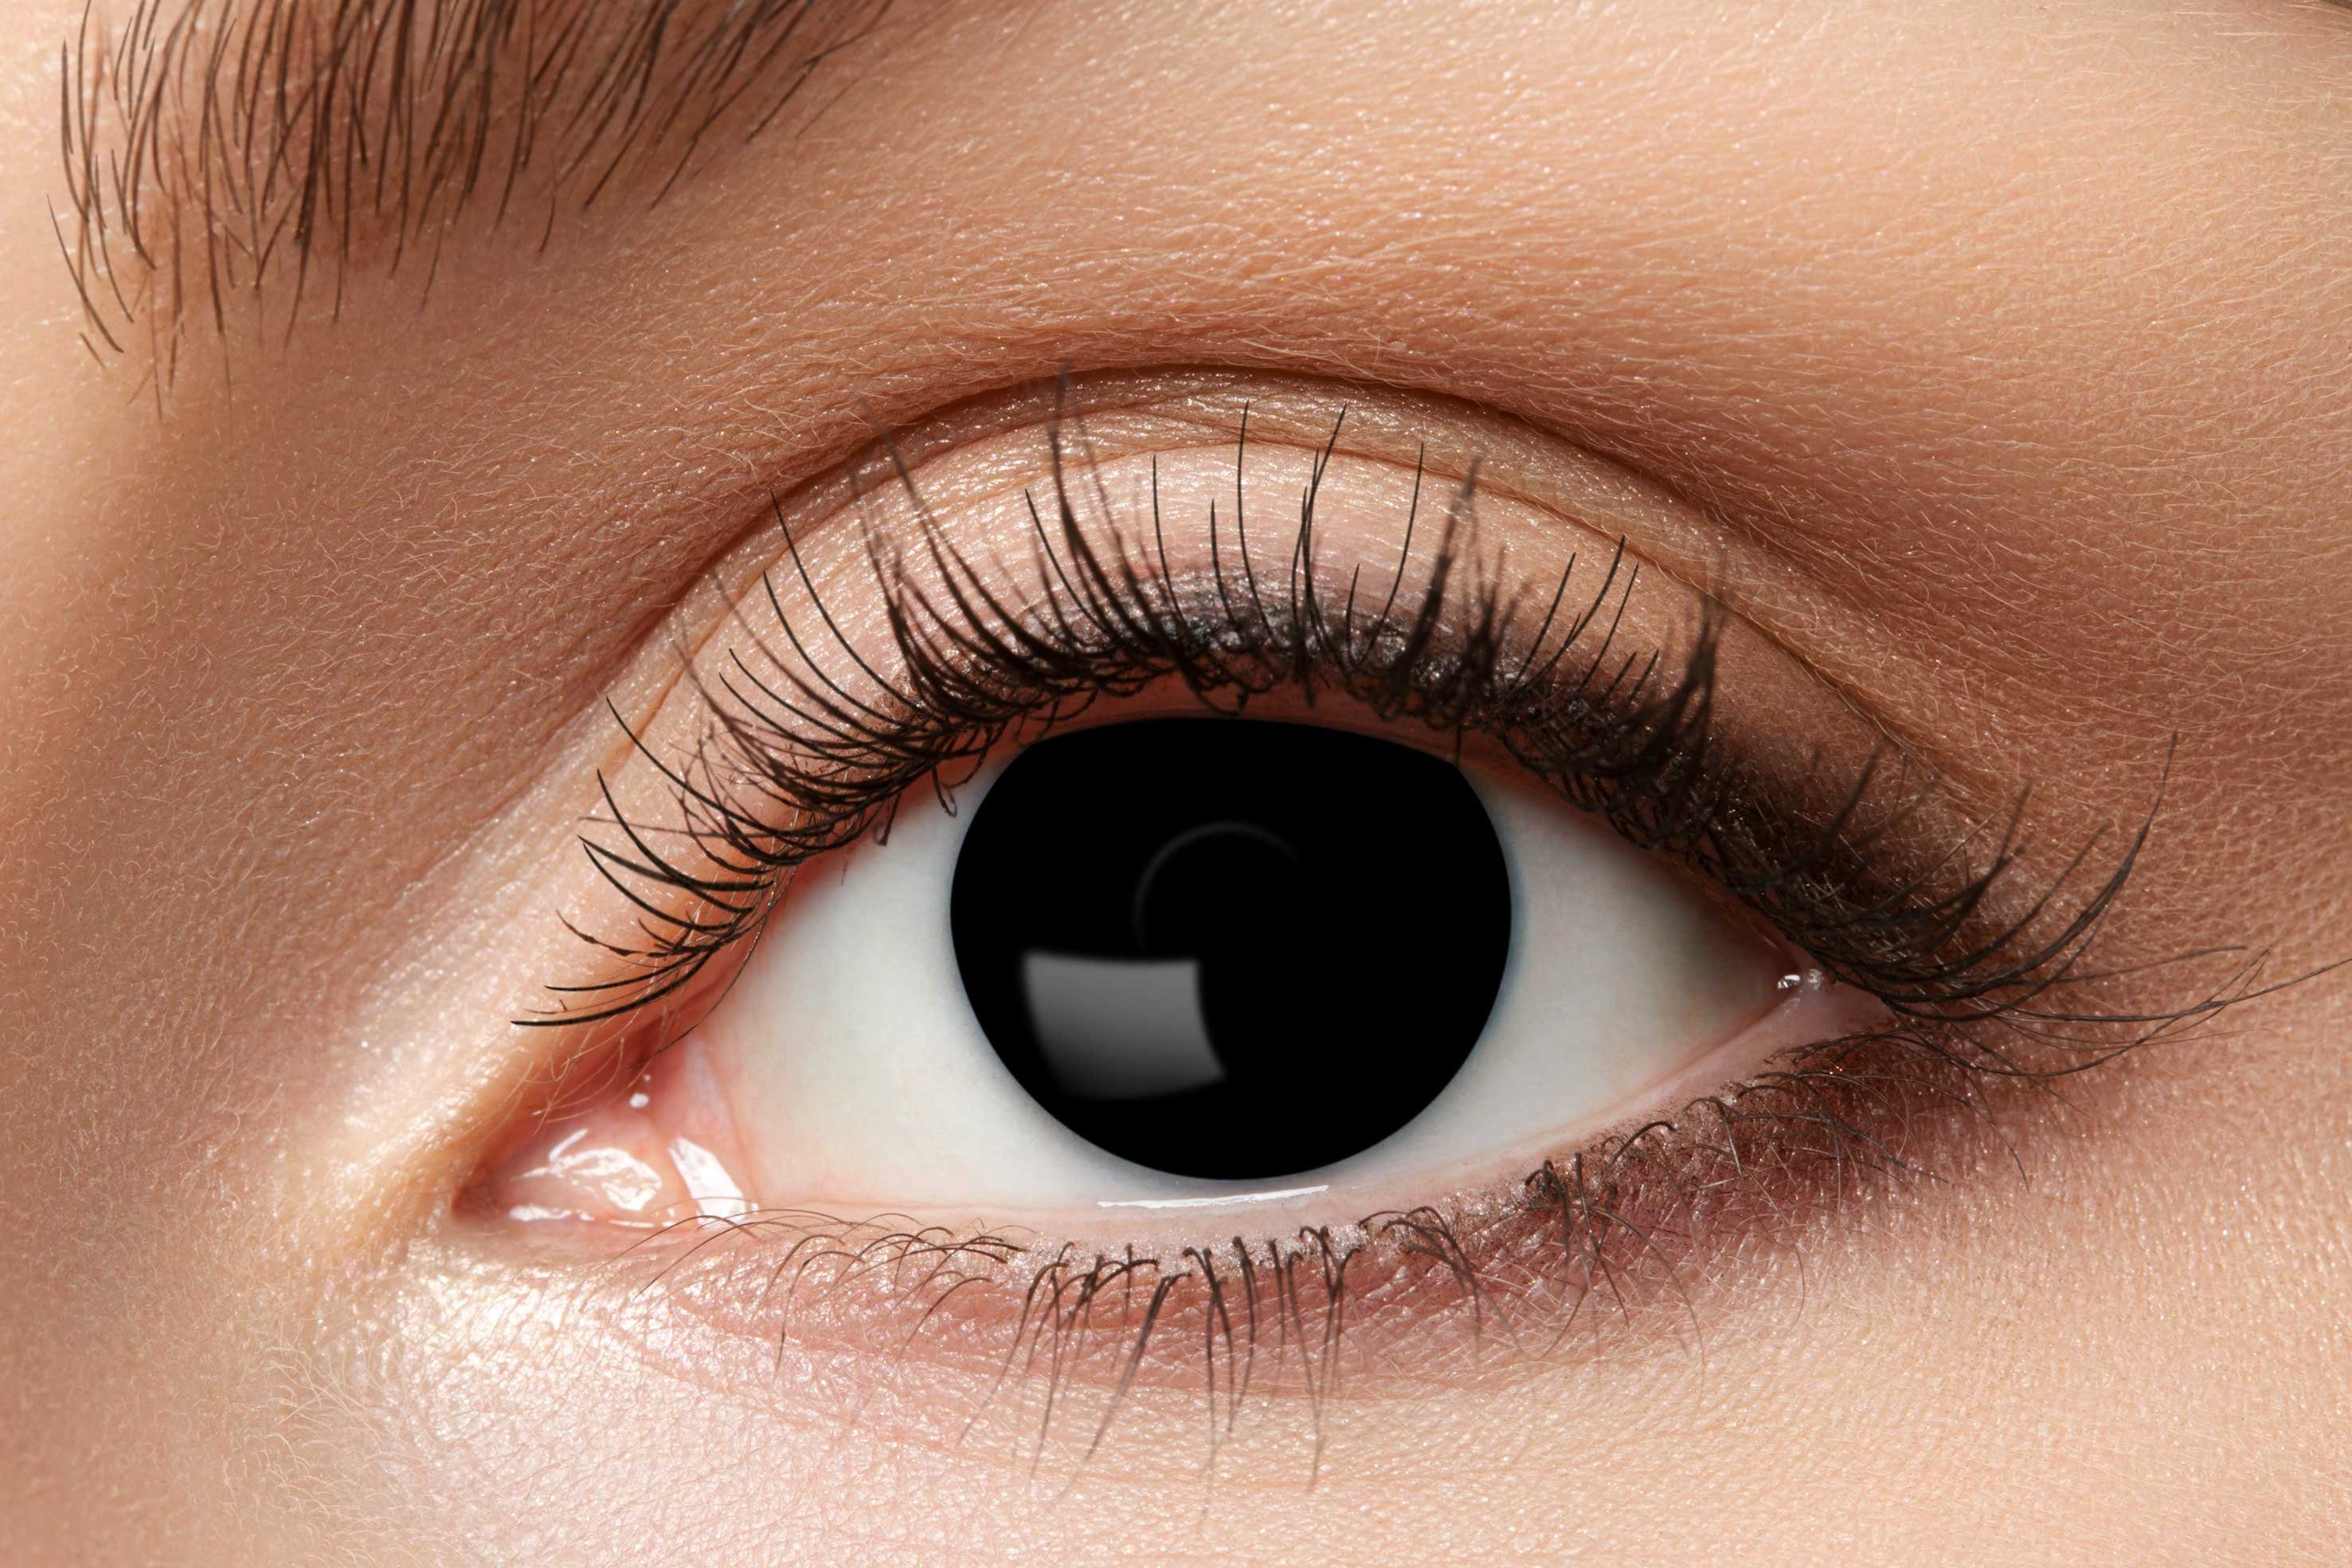 Eyecatcher Farblinsen Einfarbige Kontaktlinsen Wochenlinsen verschiedene Varianten